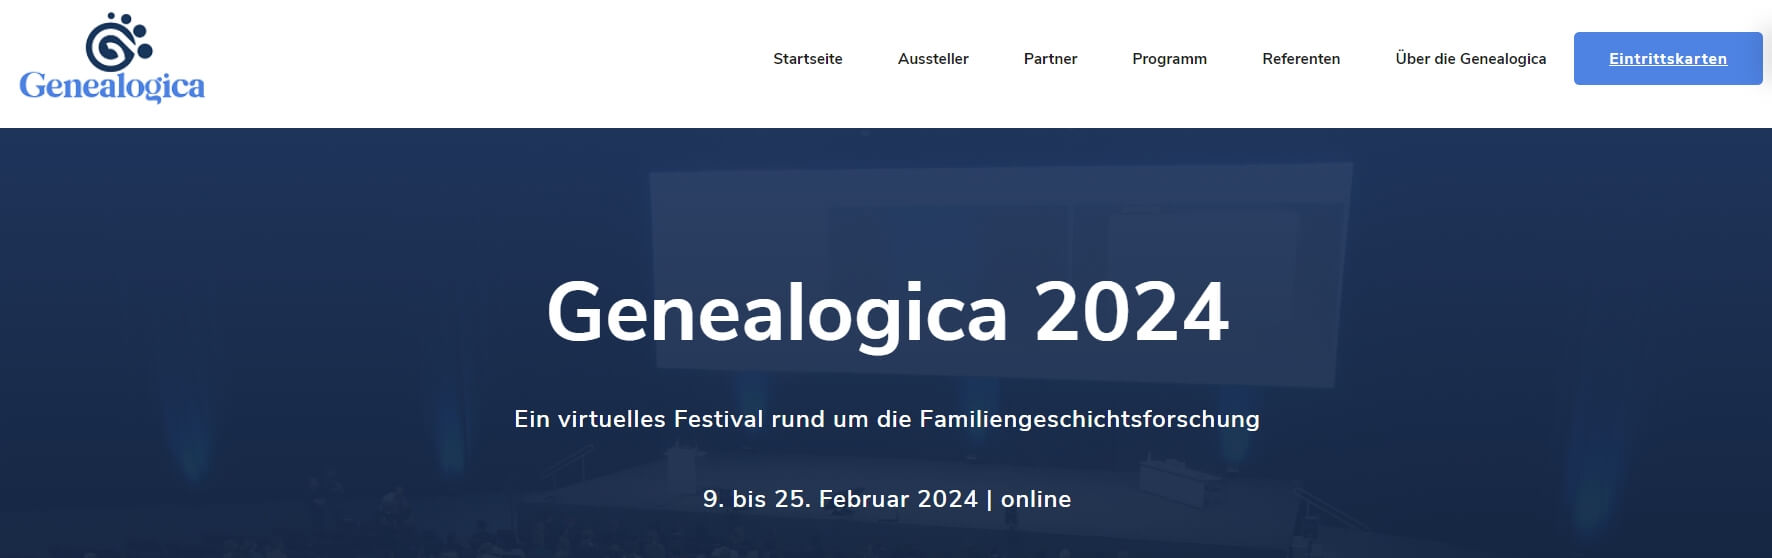 Genealogica 2024 - Ahnenforschung online Veranstaltung Genealogie online DNA Test Herkunftsanalyse DNA Ahnenforschung Vorfahren